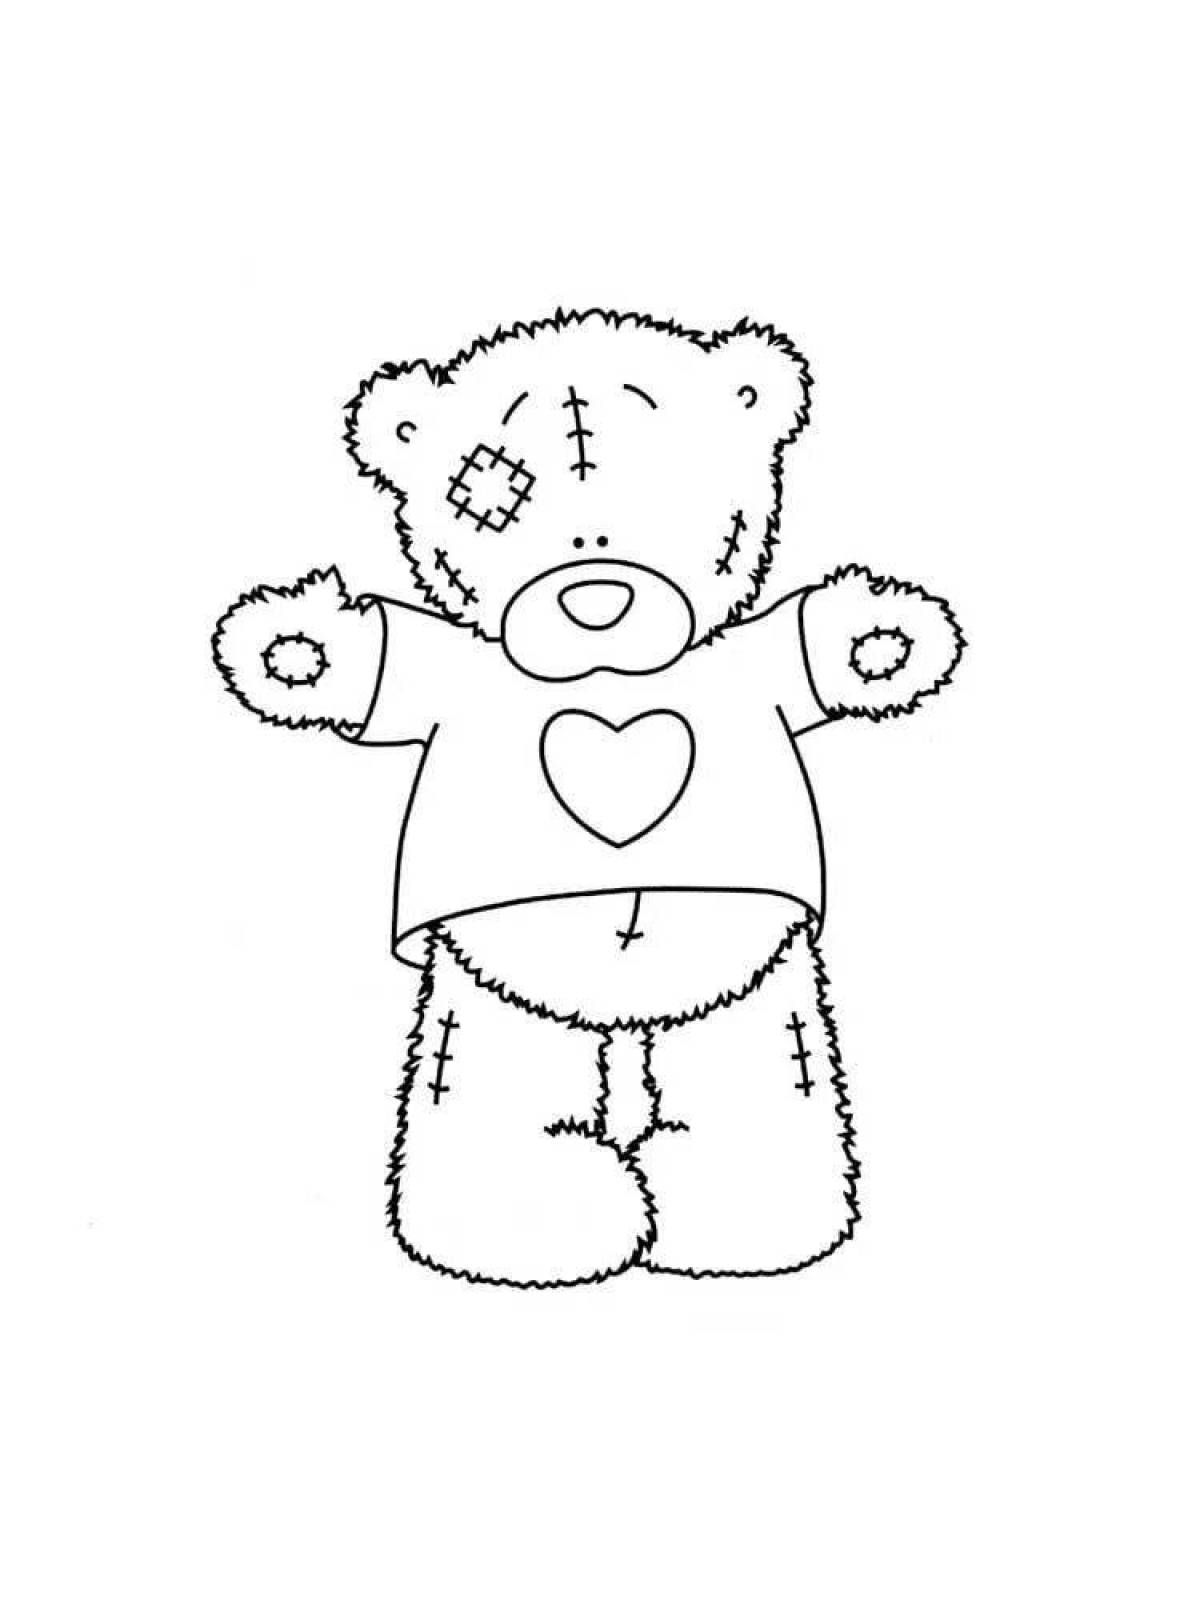 Teddy bear #2